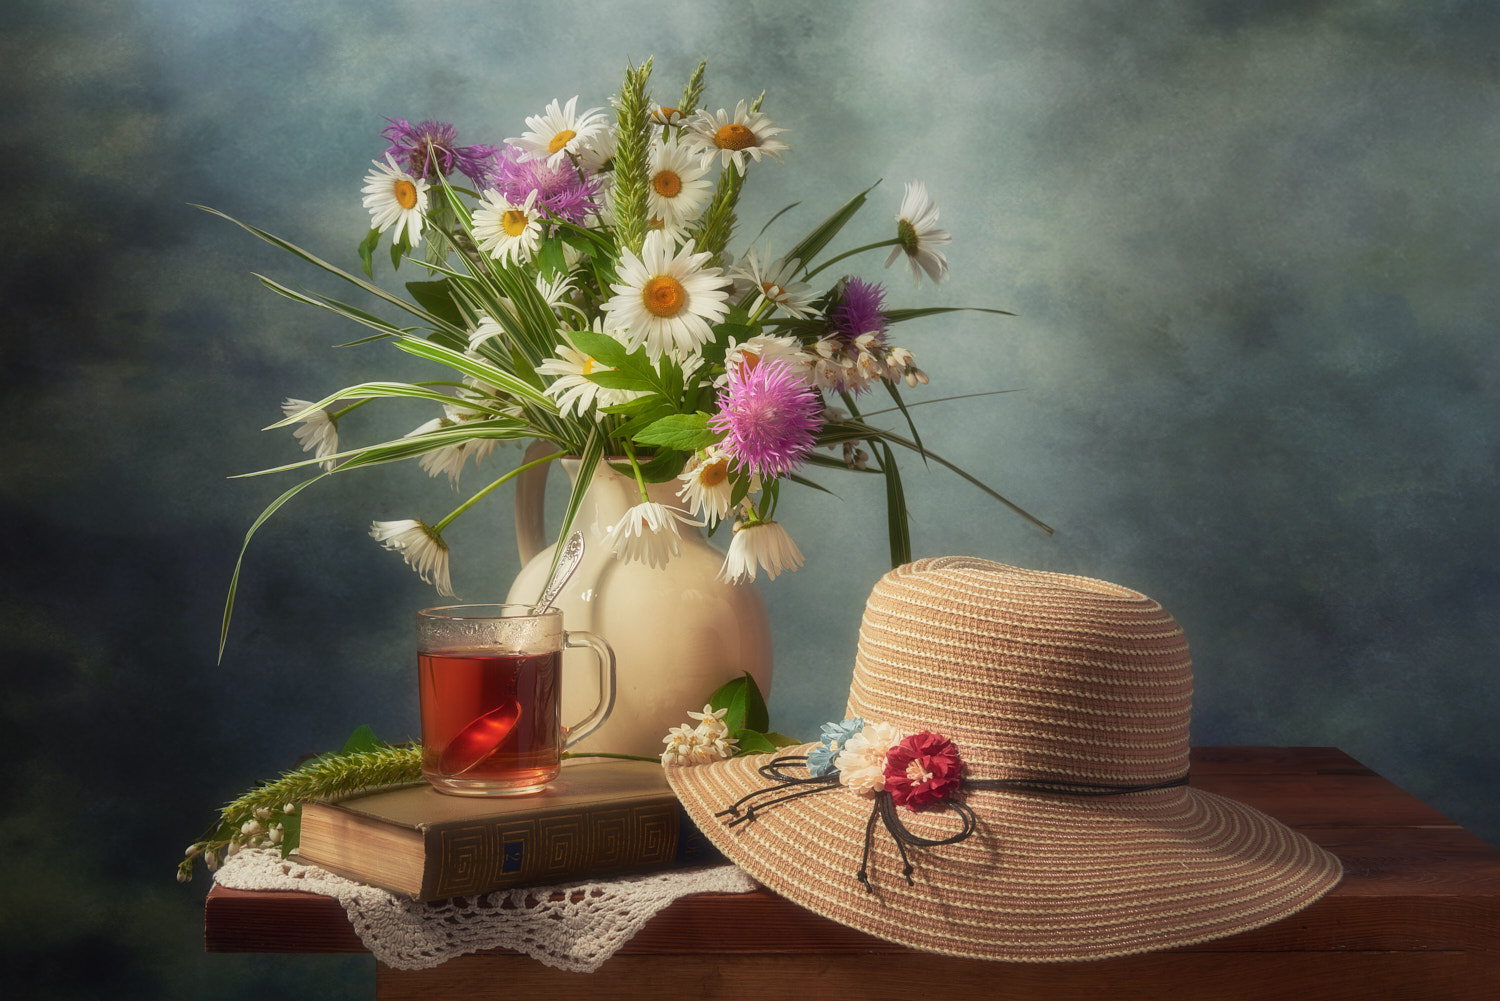 Летний натюрморт композиция постановка сцена предметы цветы букет чай шляпа